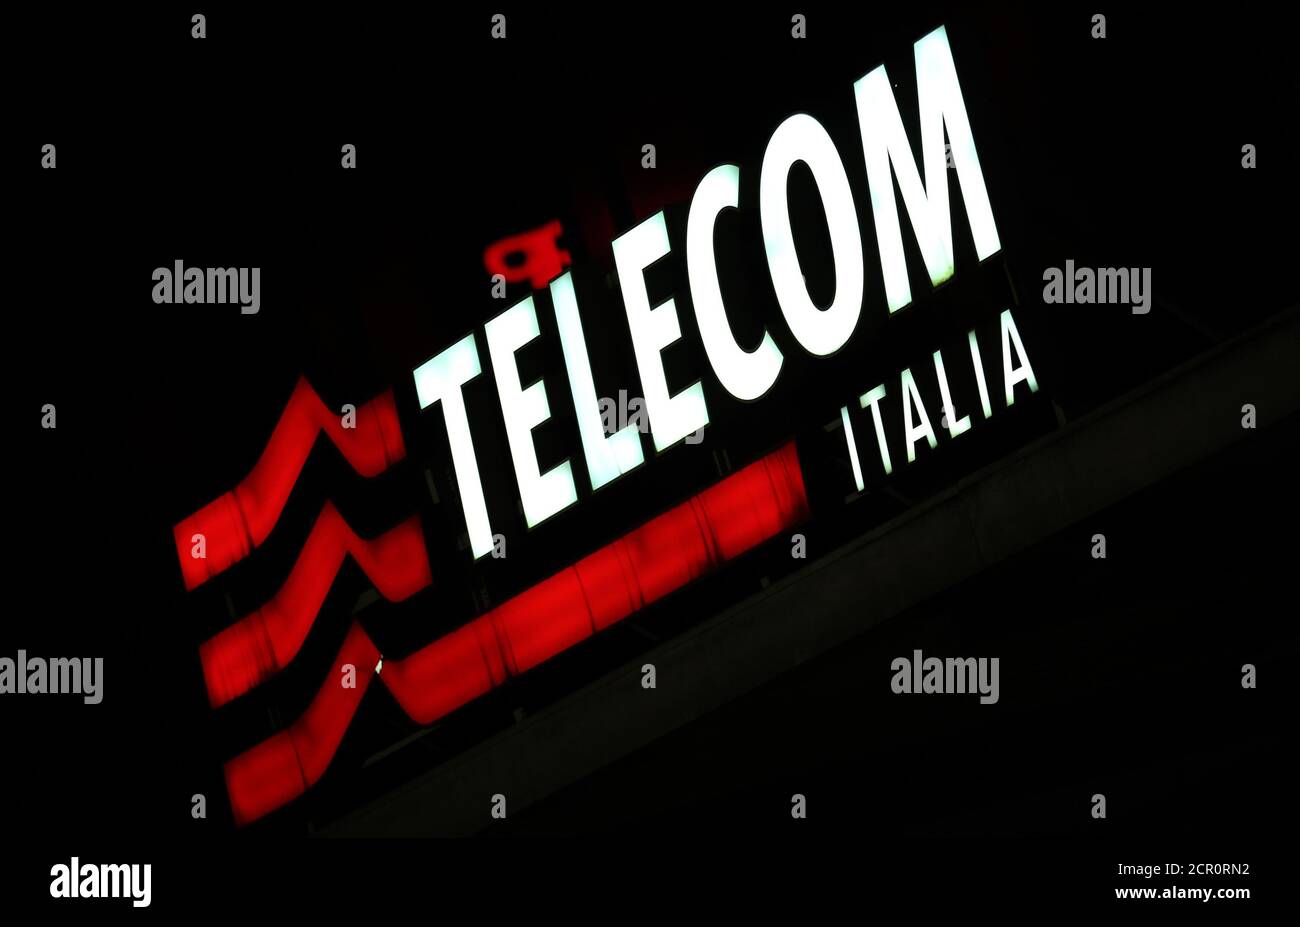 Telecom italy immagini e fotografie stock ad alta risoluzione - Alamy